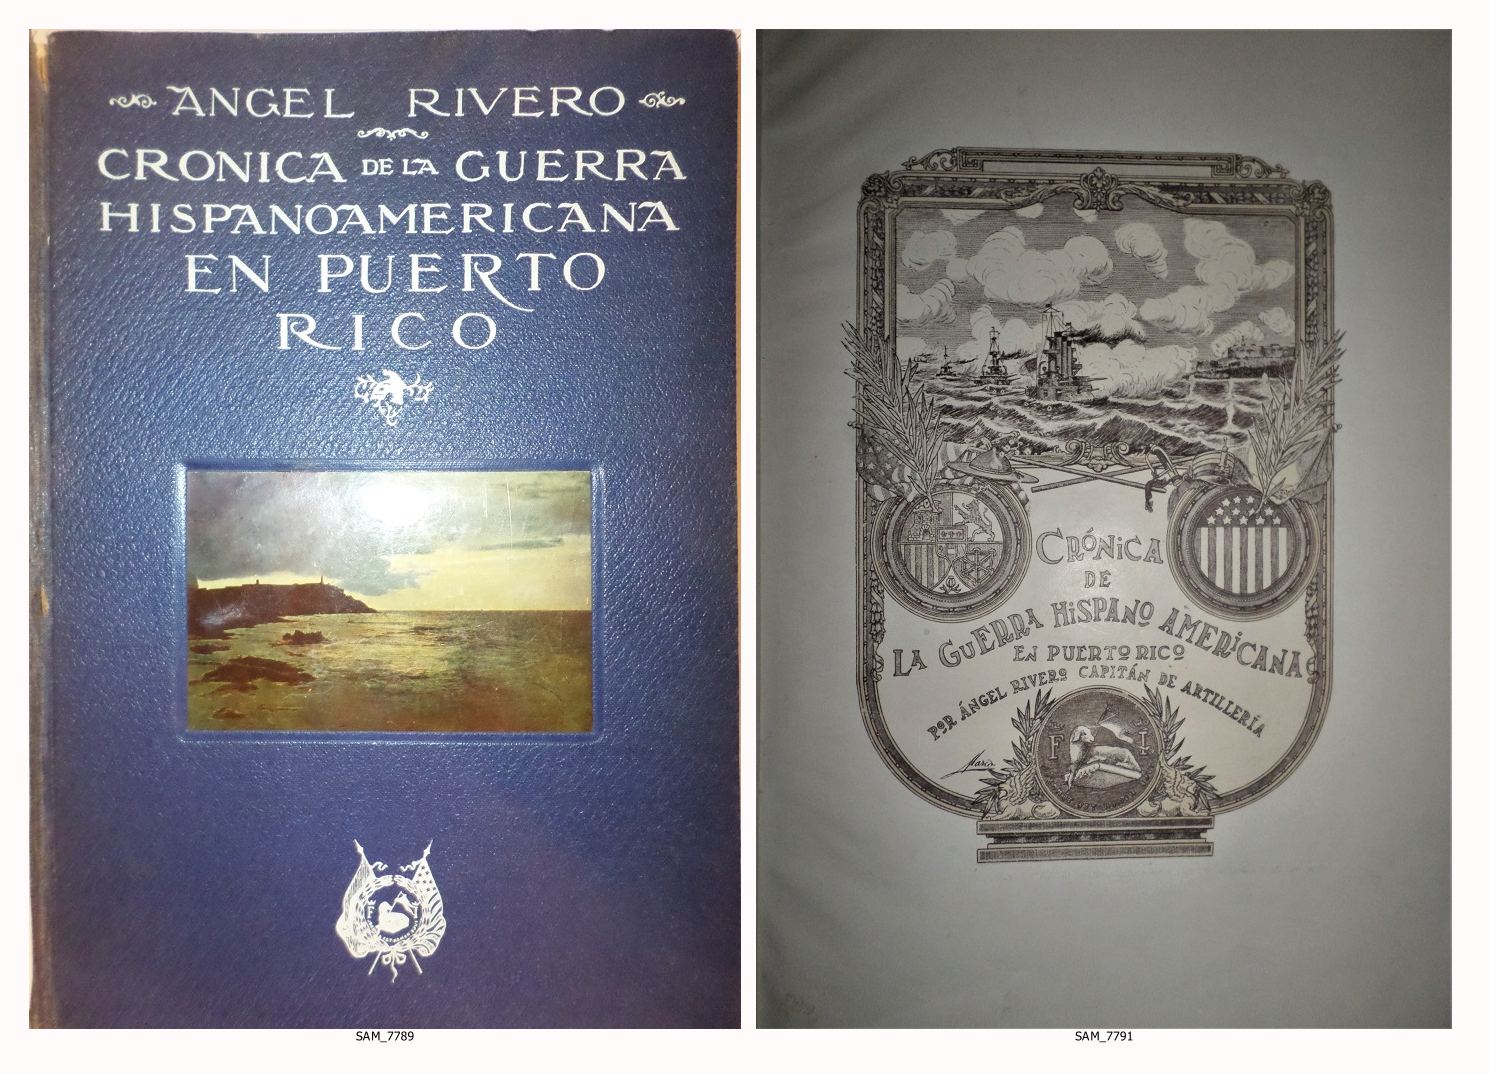 Crónica de la guerra hispanoeamericana en Puerto Rico